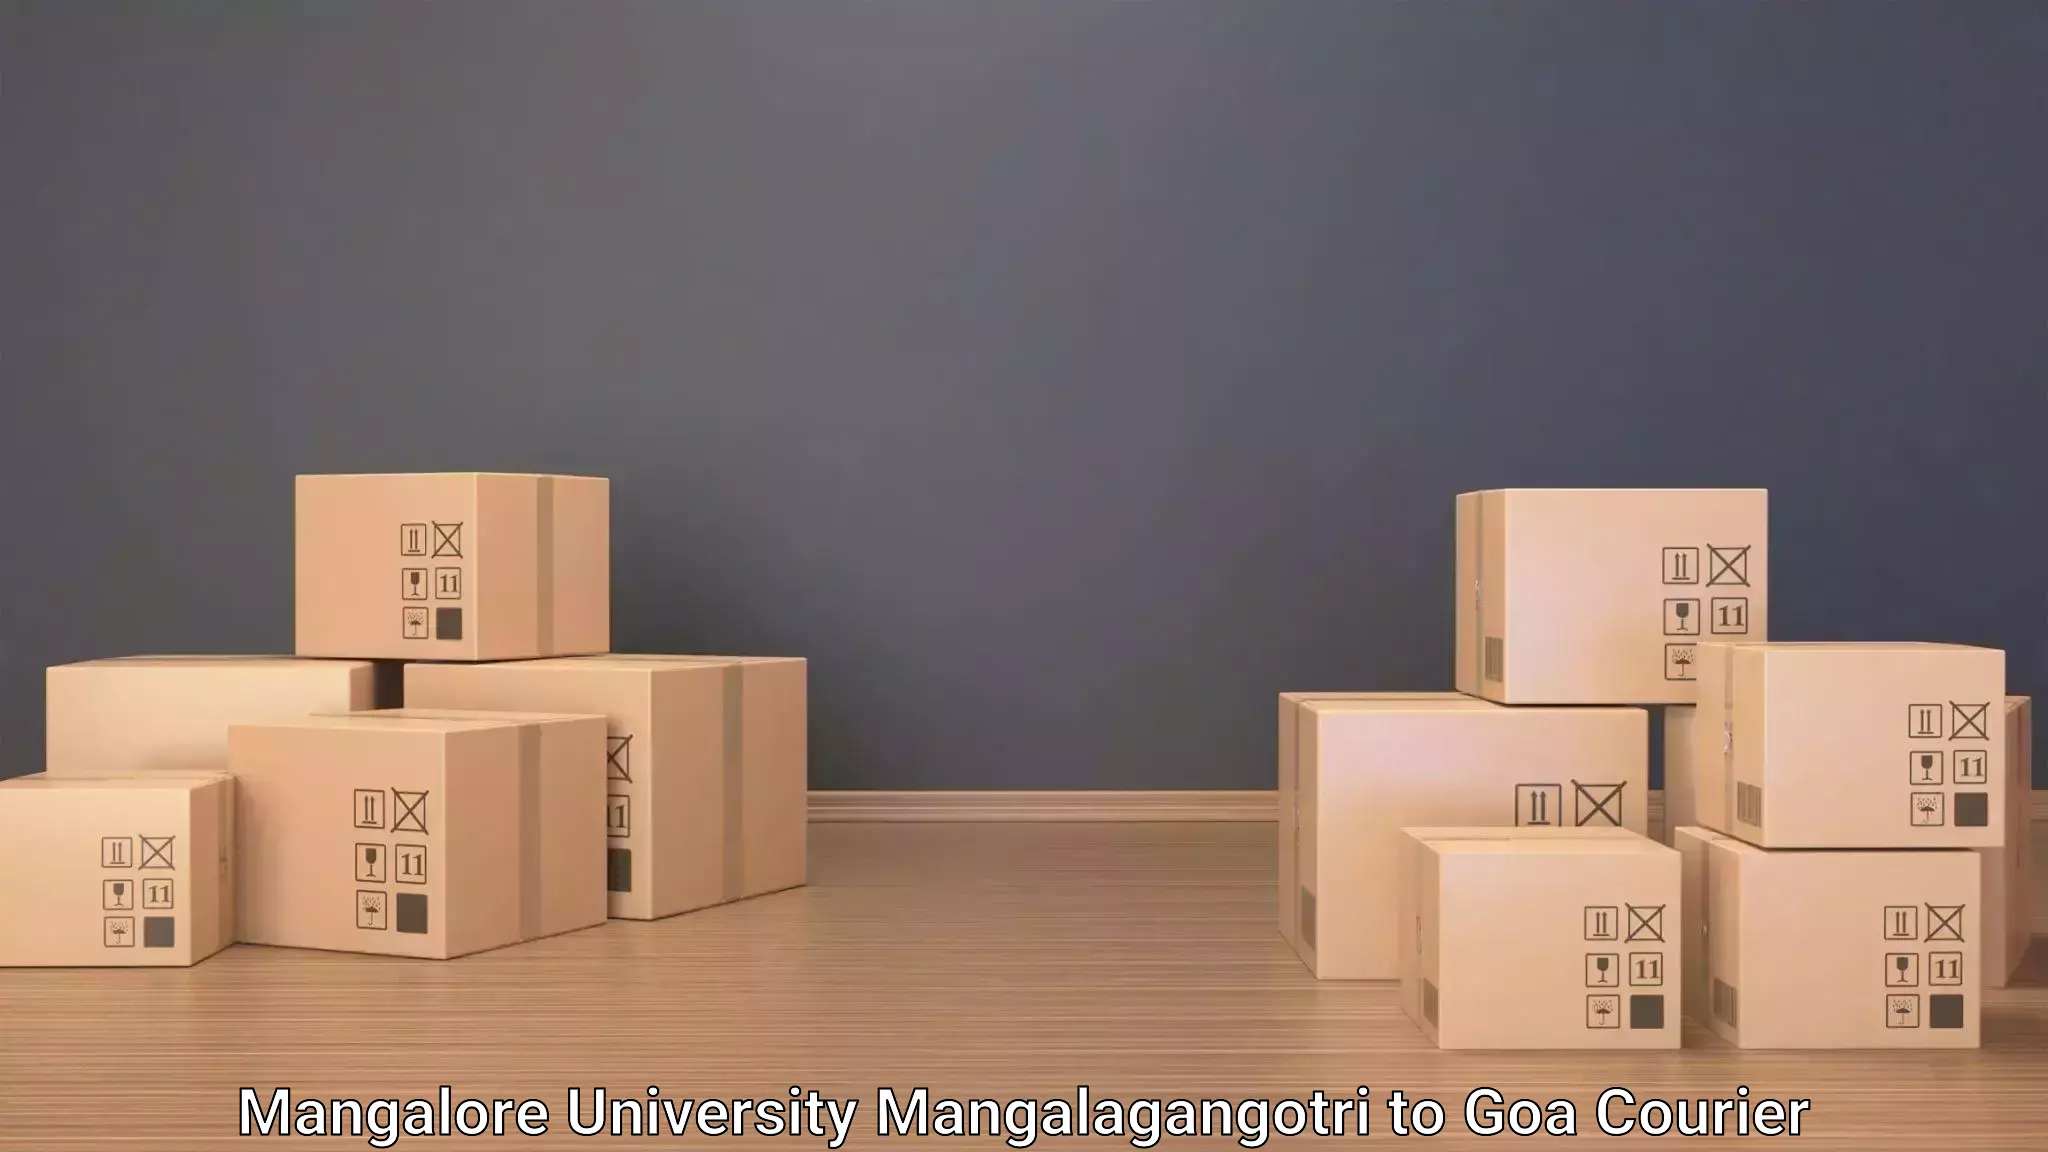 Baggage transport scheduler Mangalore University Mangalagangotri to Panjim